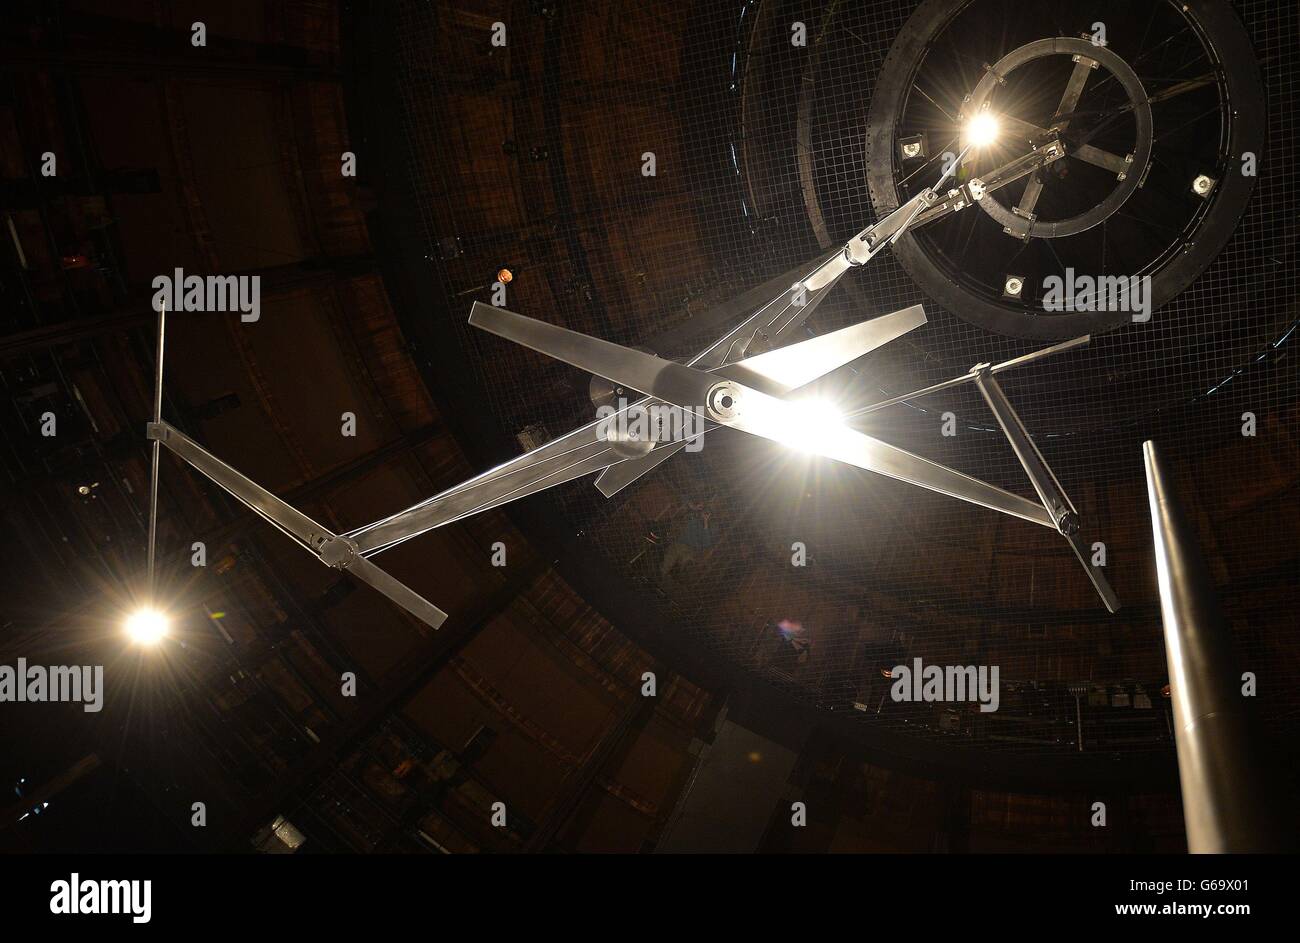 L'opera dell'artista britannico Conrad Shawcross intitolata 'Timepiece', che è tre mani girevoli con luci ad ogni estremità per replicare le lancette dell'orologio, in un'anteprima stampa al Rounhouse , nel nord di Londra, dove l'arte moderna sarà in mostra per un mese. Foto Stock